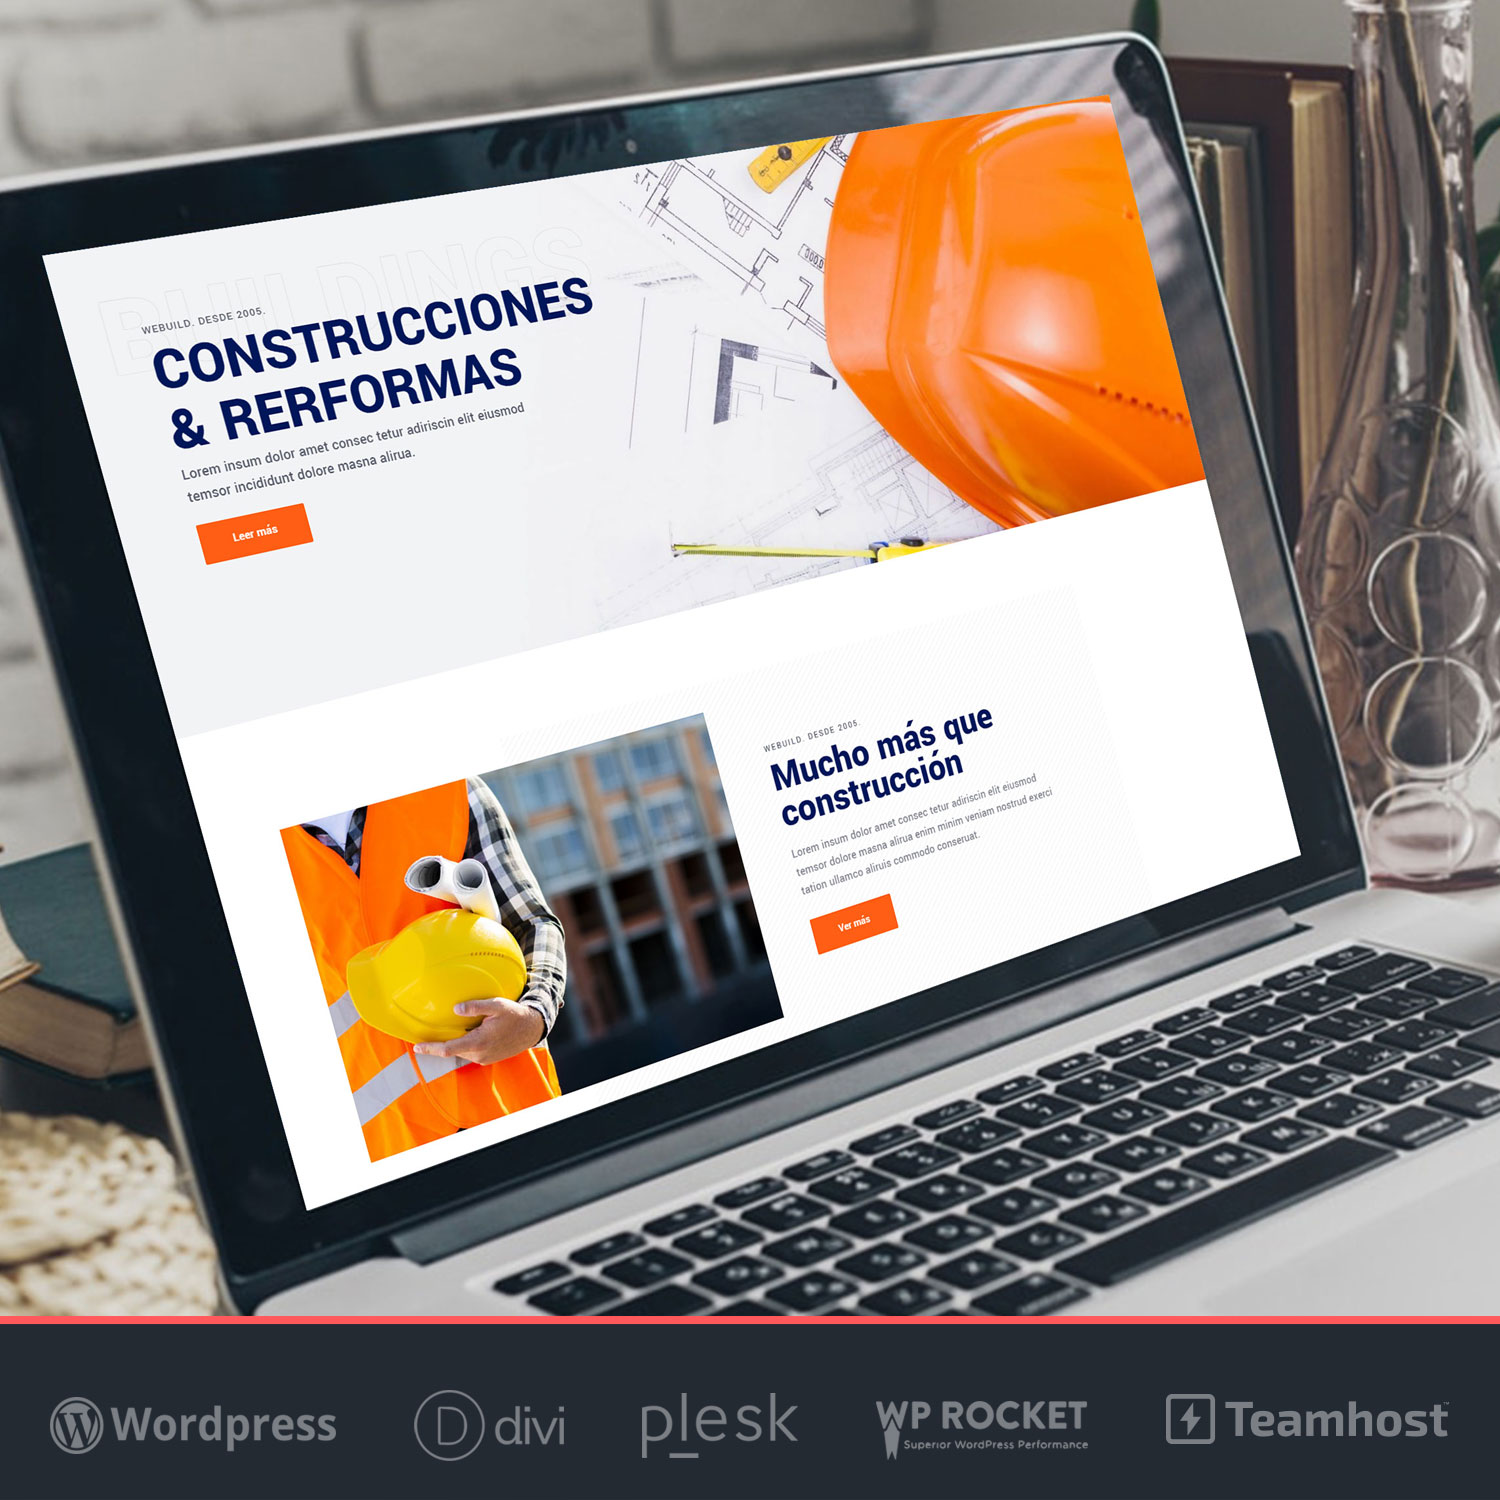 webuild pagina web construcciones wordpress divi